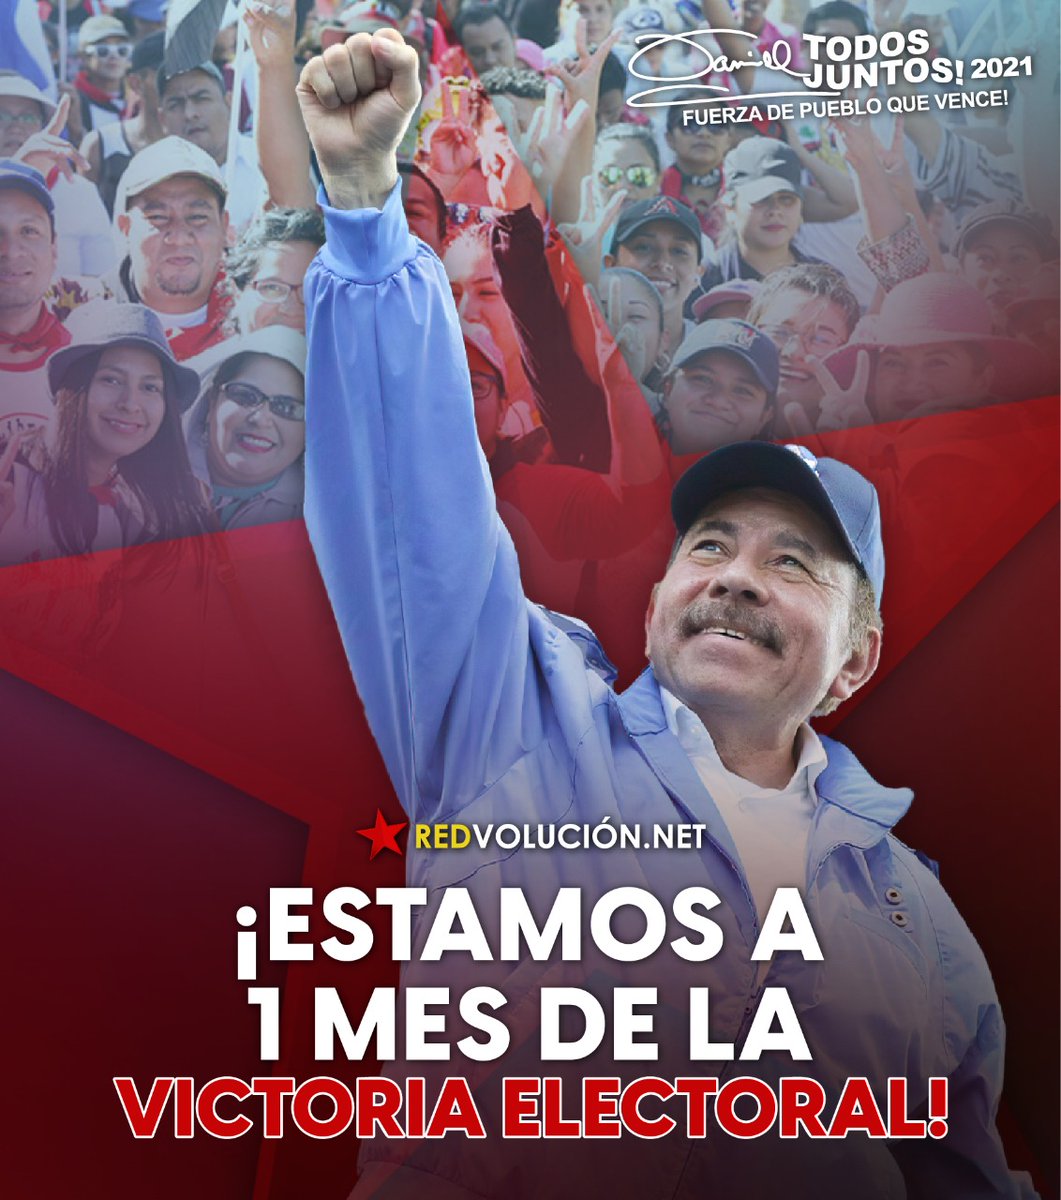 #ElPuebloPresidente A un mes de la gran victoria electoral, la victoria del pueblo Nicaragüense 
#UnidadParaLaProsperidad 
#TodosJuntosVamosAdelante 
#Nicaragua @CTipitapa @Majatriz @LaureanoOrtegaM @MamiSandinista @mijamart88 @nica_rojaynegra @AdelanteSiempr4 @ClsNicaragua